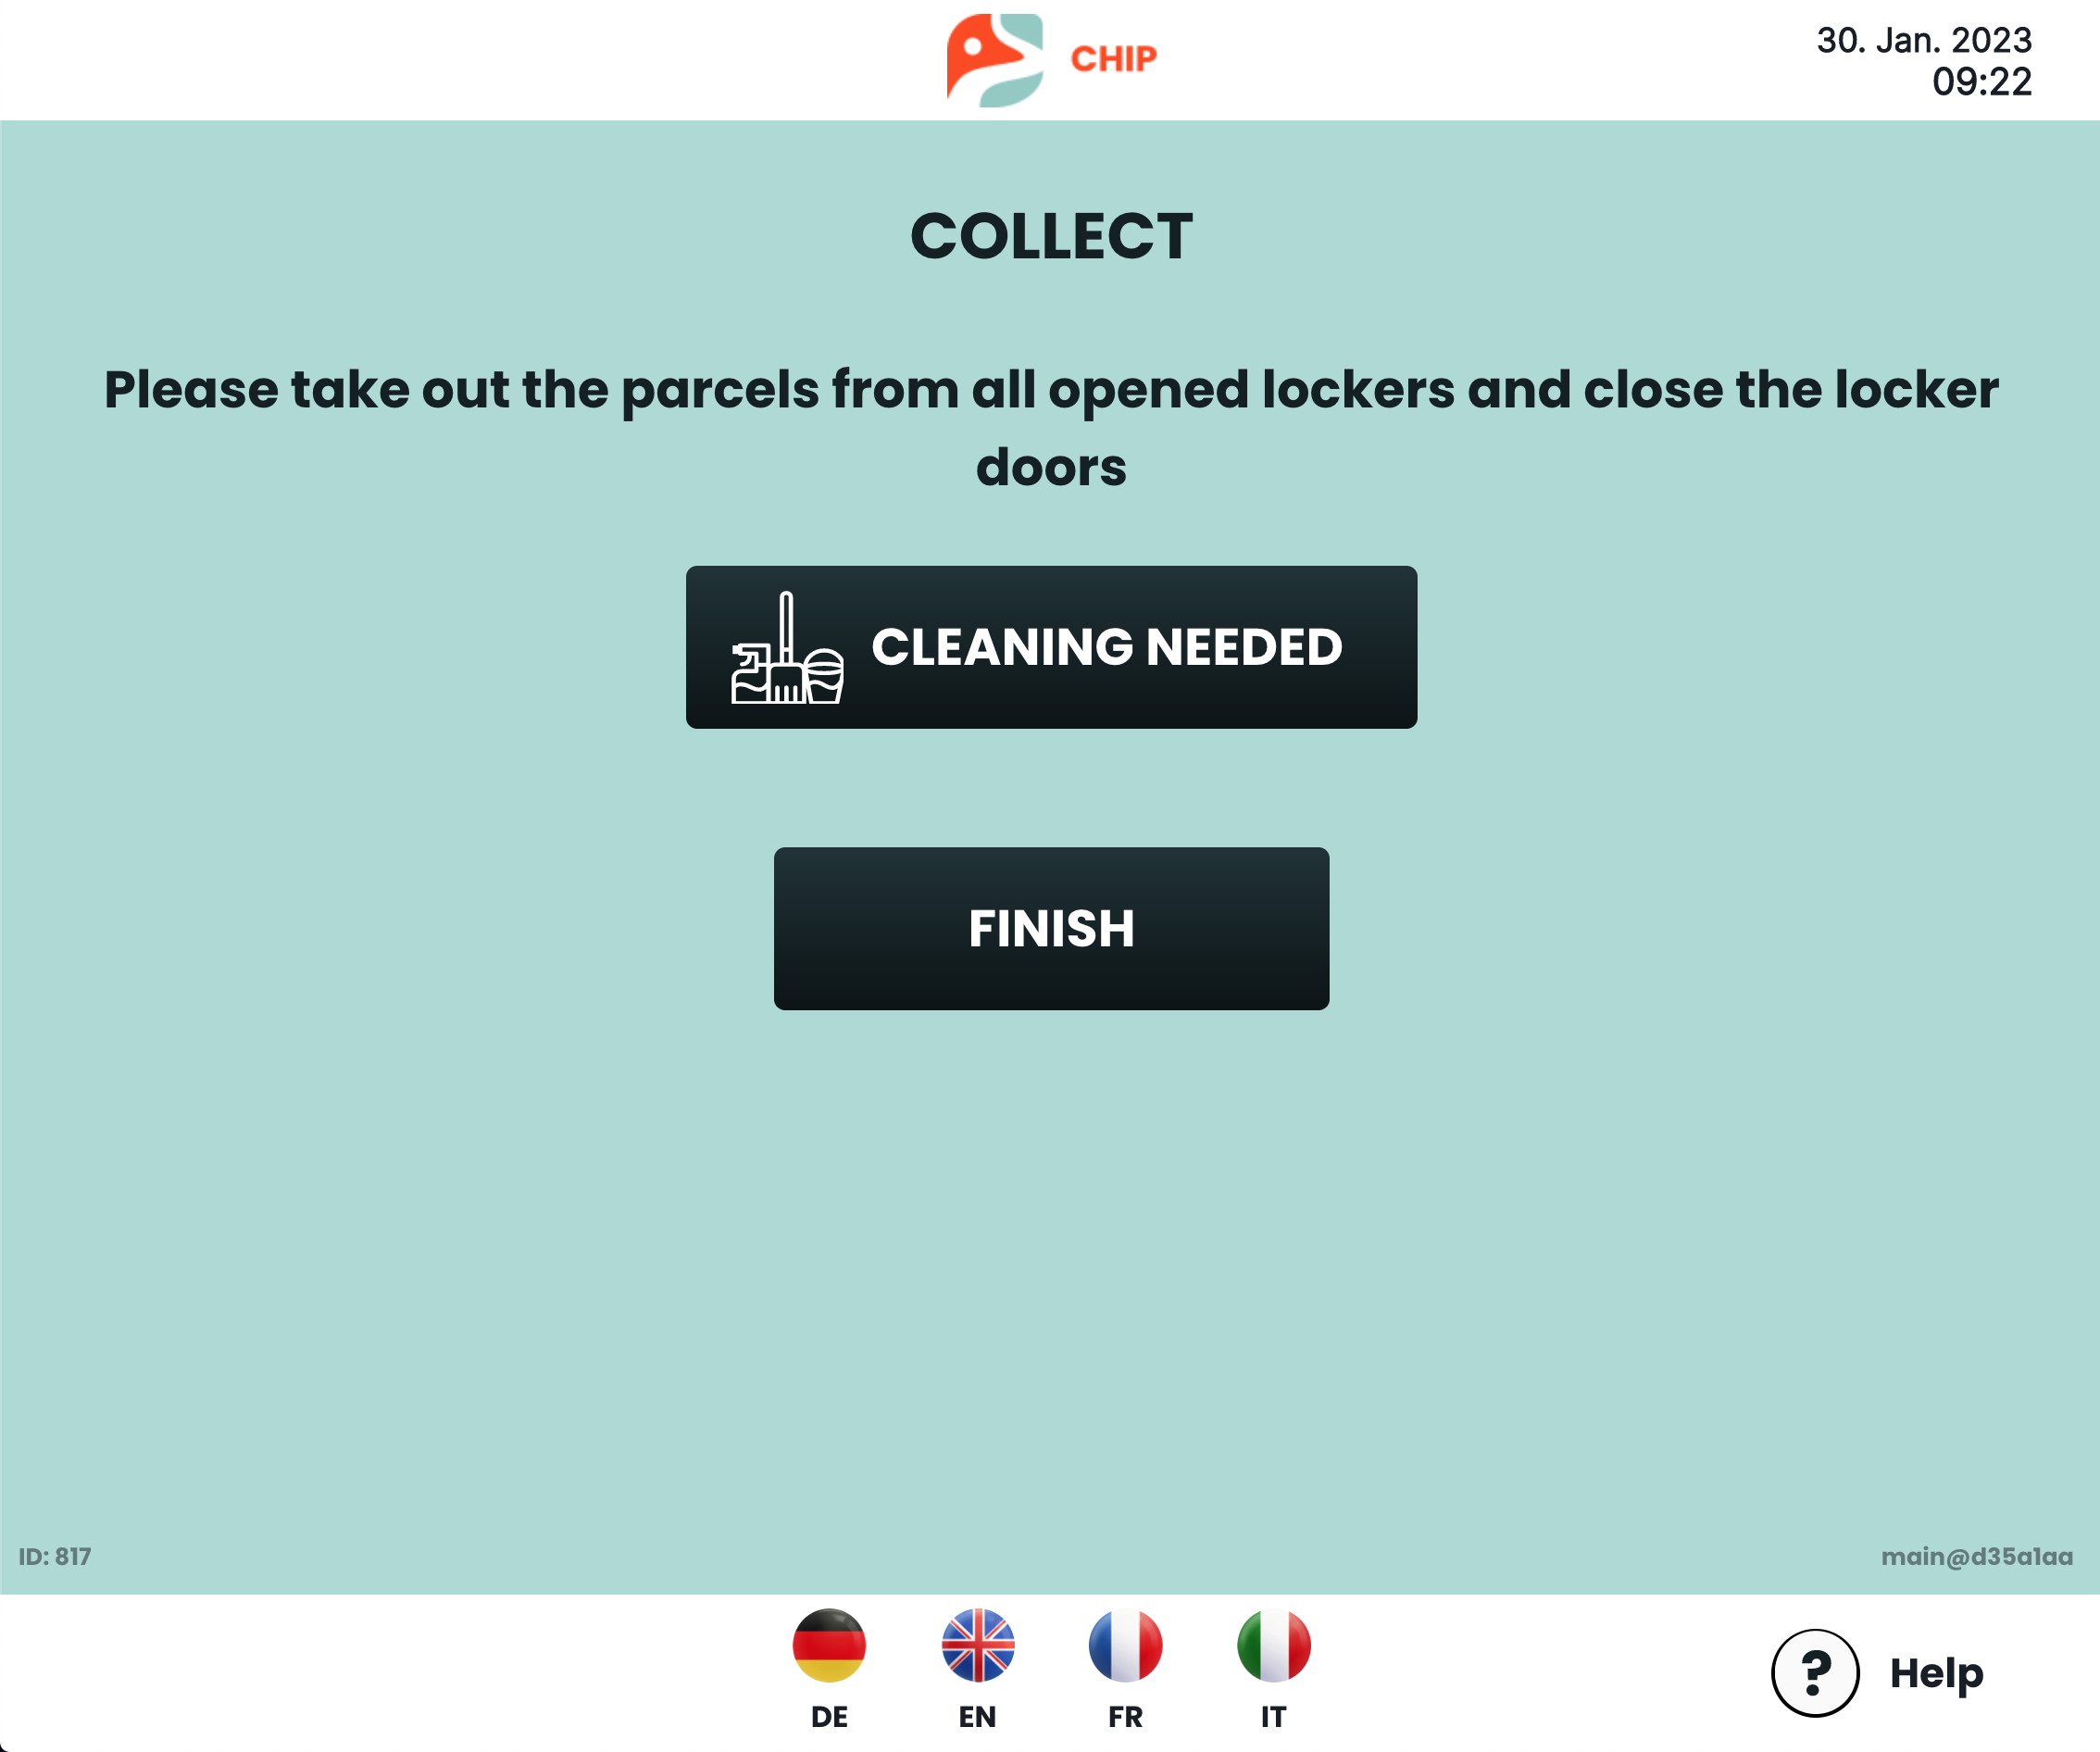 Collect parcel - unlock